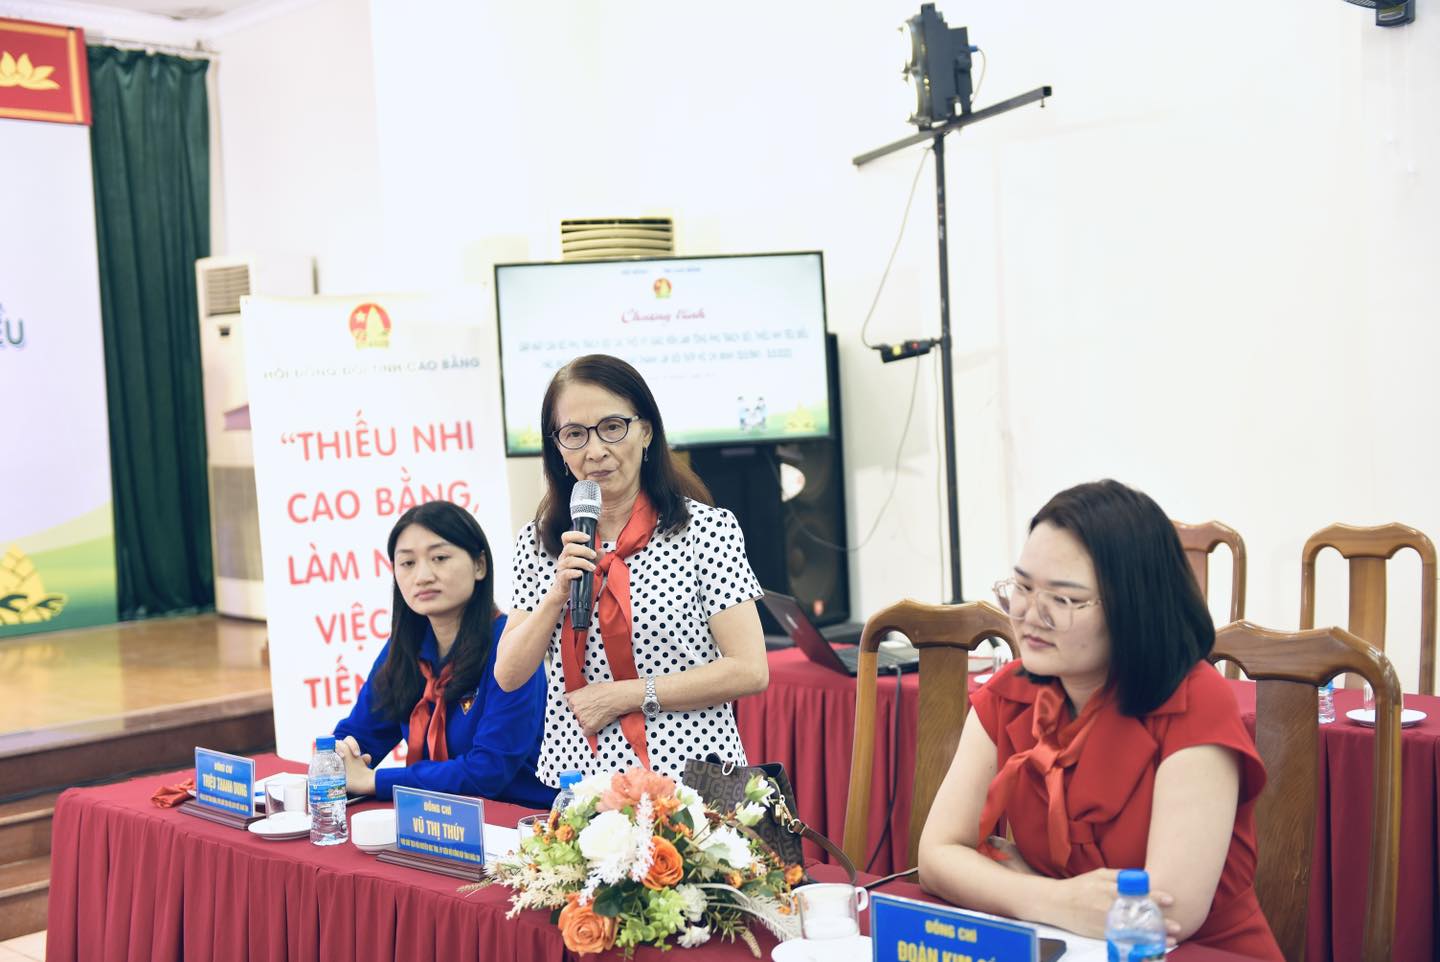 Đồng chí Vũ Thị Thuý - Phó Chủ tịch Hội Khuyến học tỉnh, Uỷ viên Hội đồng Đội tỉnh phát biểu chia sẻ kinh nghiệm.